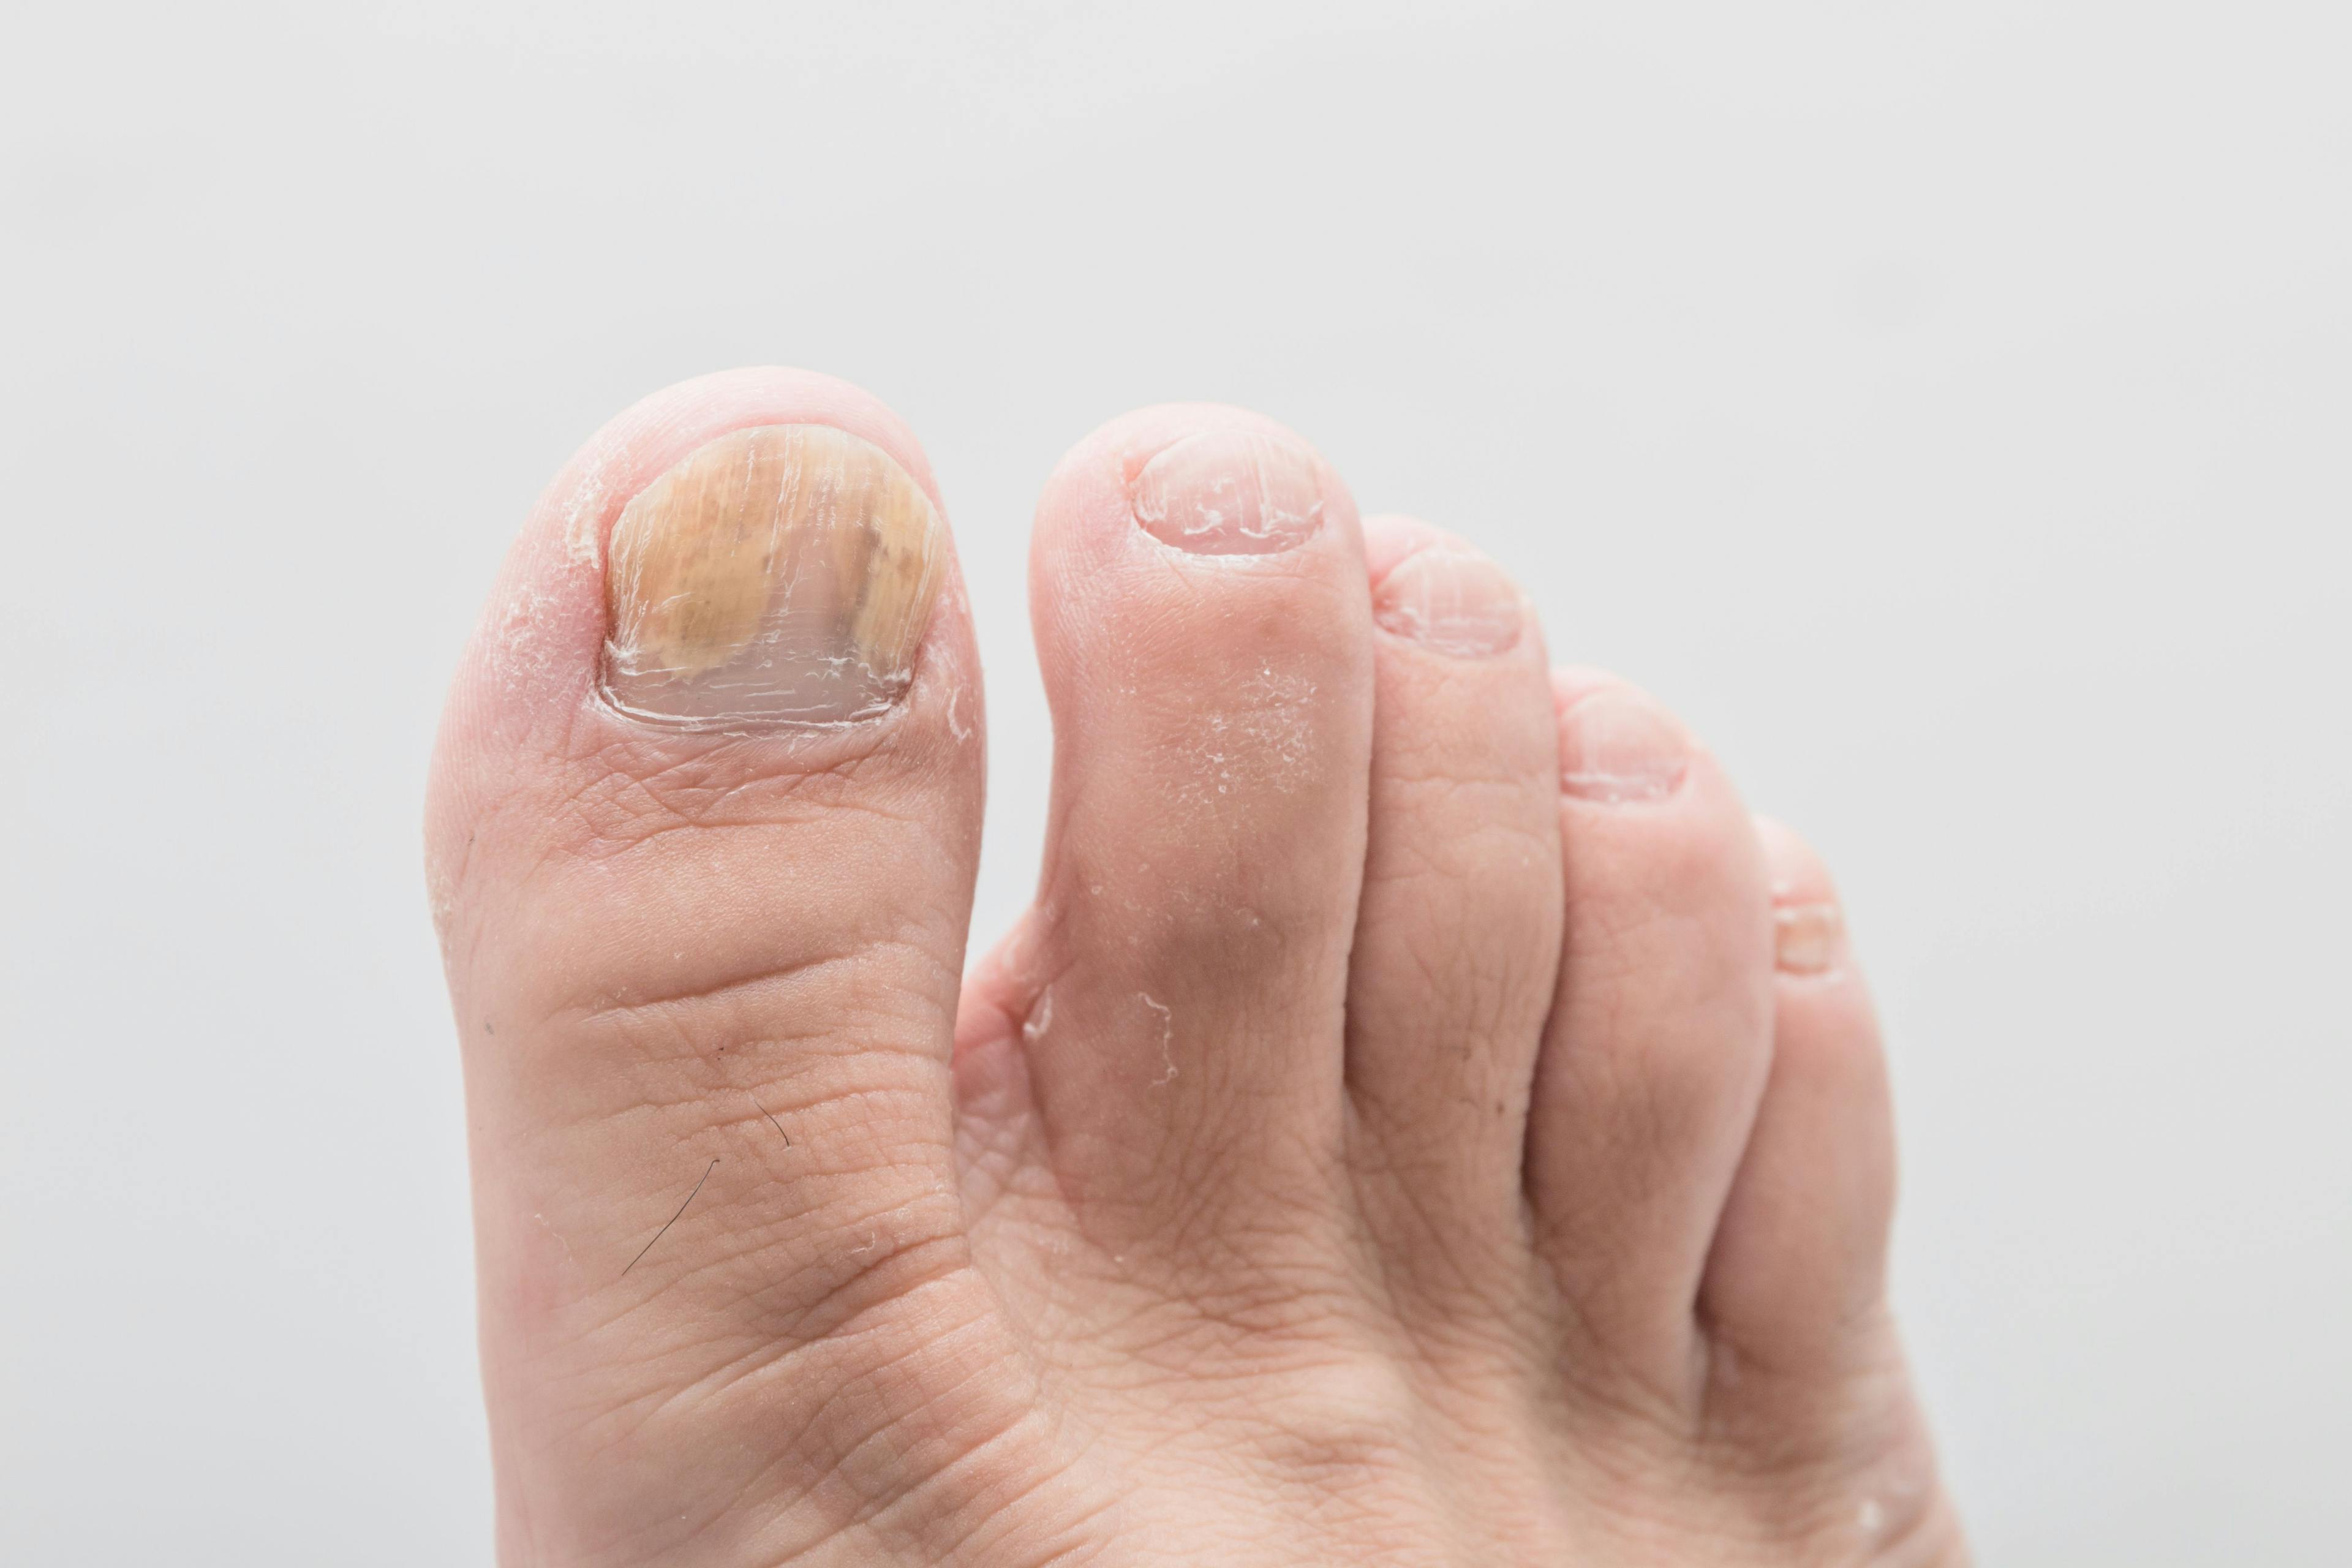 Close-up foot of nail fungus - image credit: daizuoxin © Adobestock